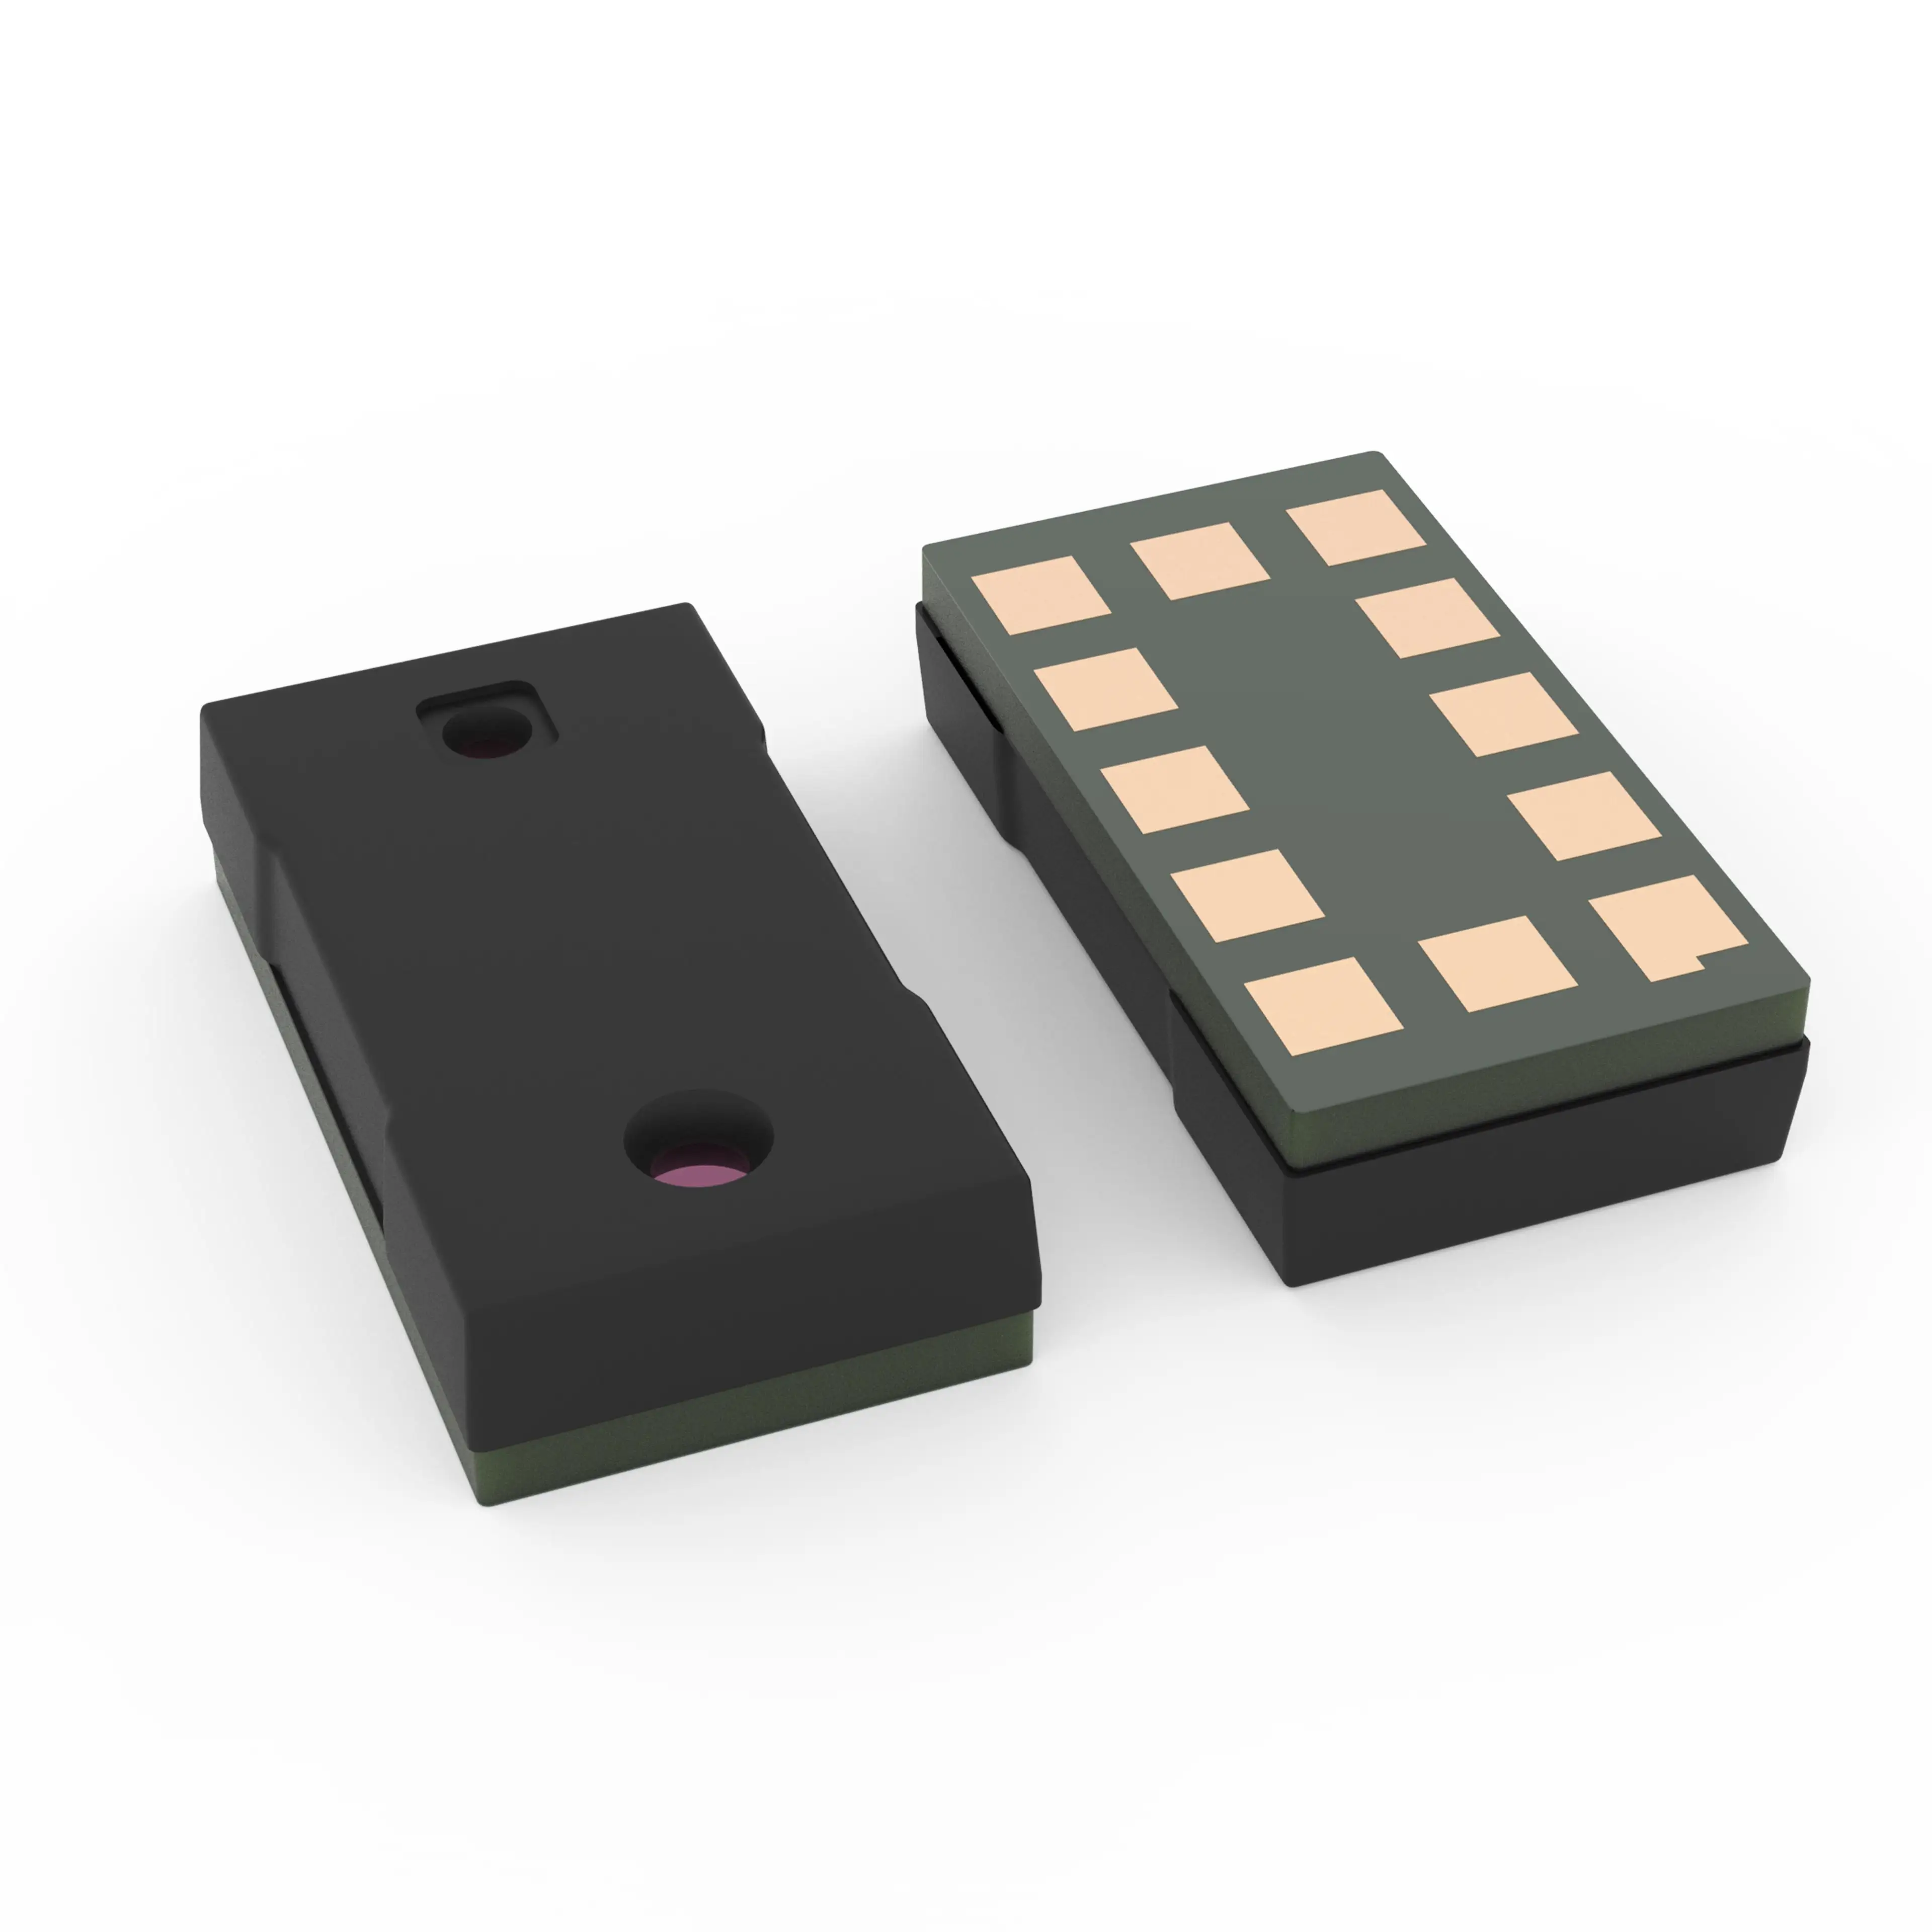 Zeer Nauwkeurige Dtof-Sensor Voor Laserondersteunde Scherpstelling (Laf) In Consumentenelektronica Voor Smartphones En Mobiele Telefoons